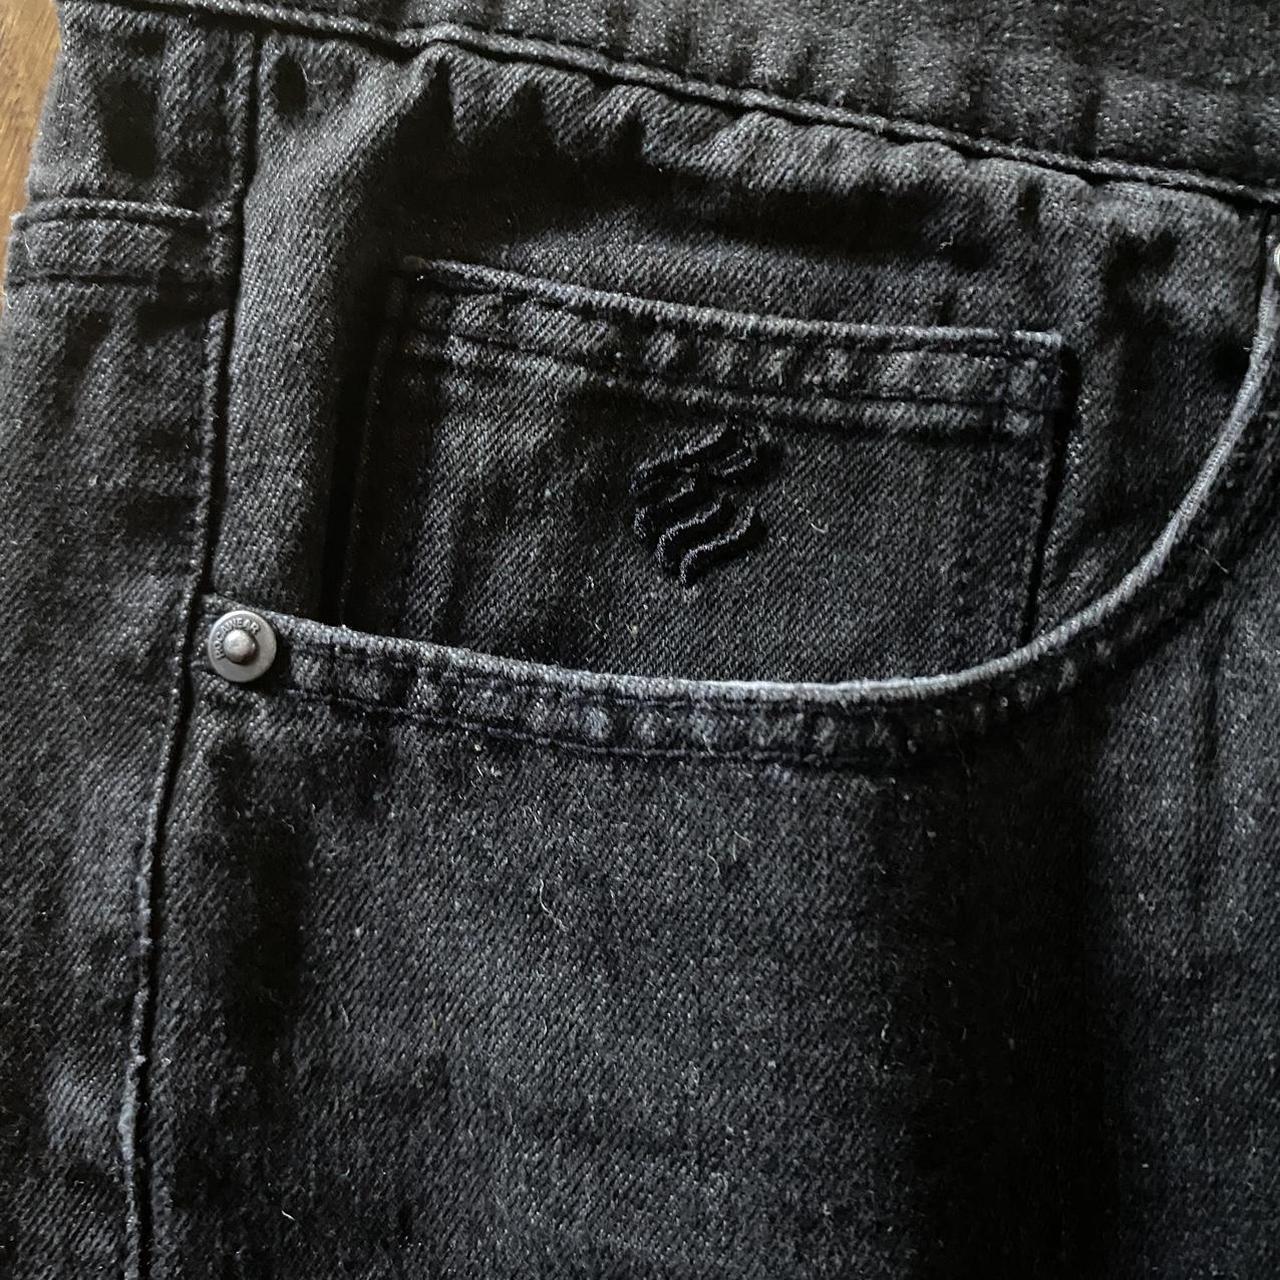 Y2K baggy Roca Wear jeans , Cut down to 24 inseam